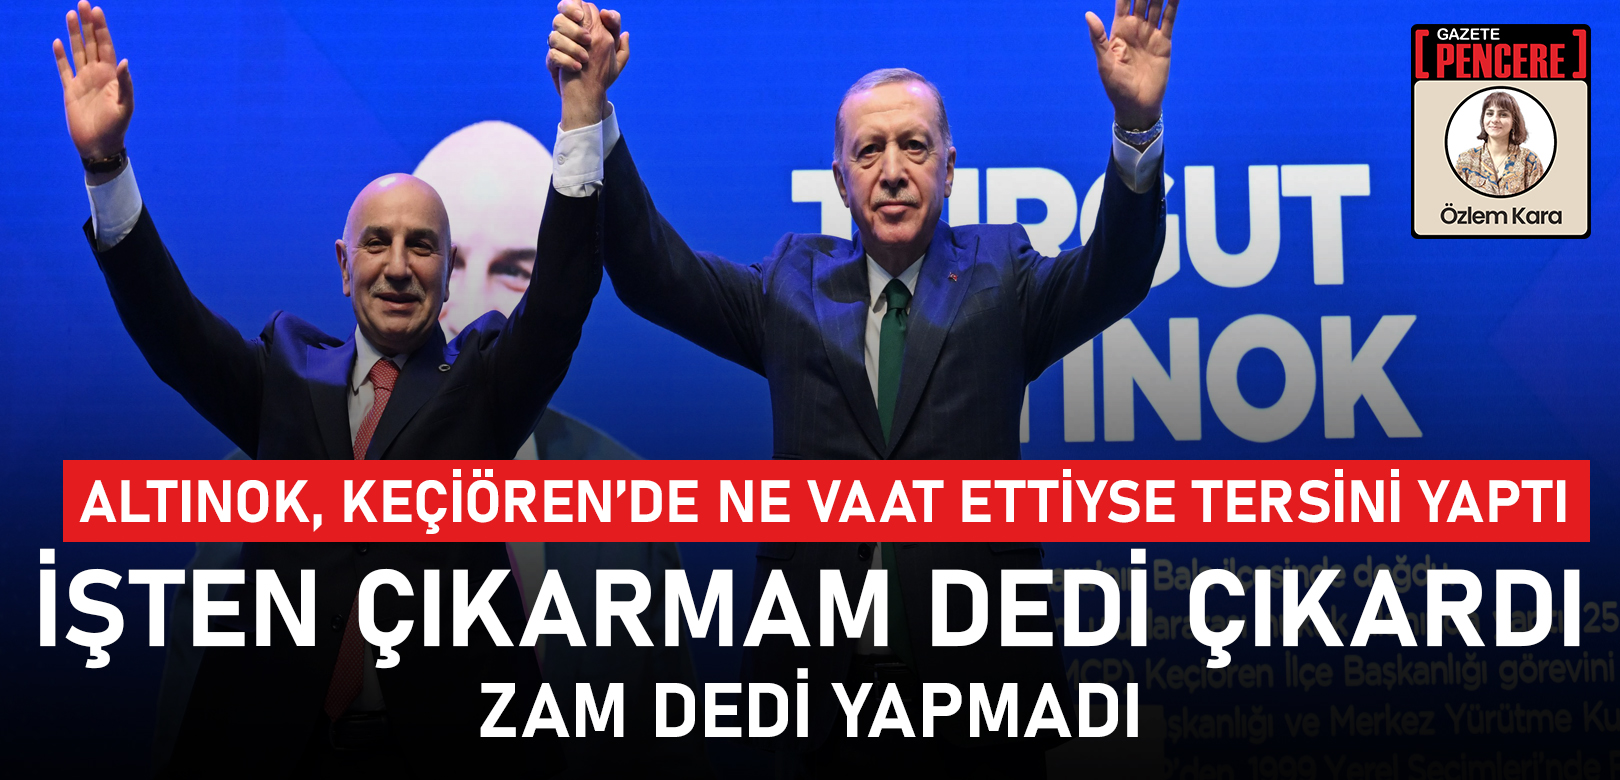 AKP Ankara adayı Altınok, Keçiören’de ne vaat ettiyse tersini yaptı: İşten çıkarmam dedi çıkardı, zam dedi yapmadı